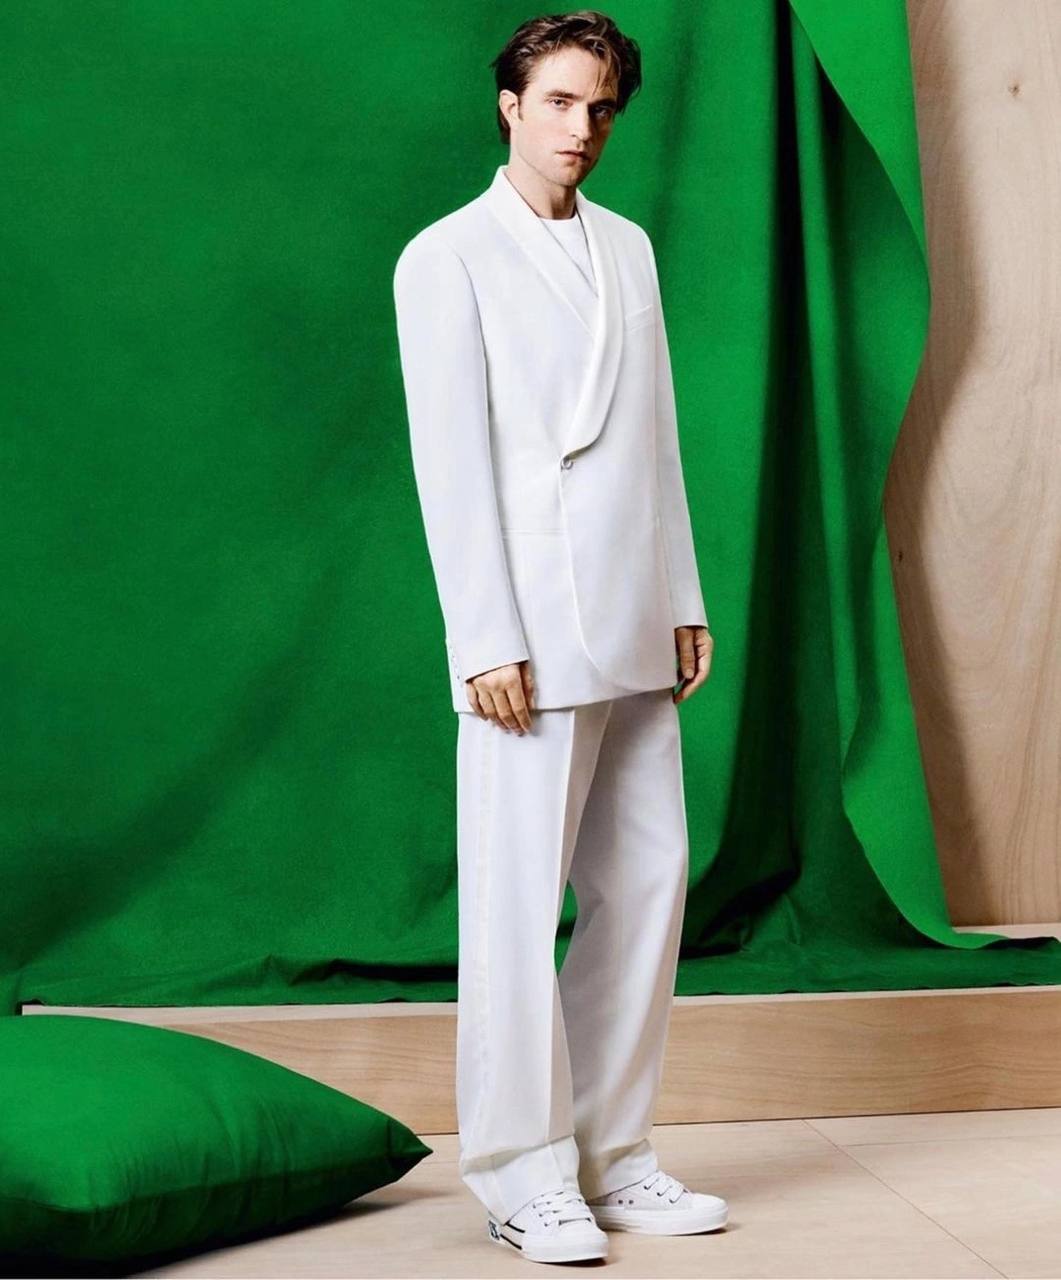 Роберт Паттинсон в новой рекламной кампании Dior-Фото 2